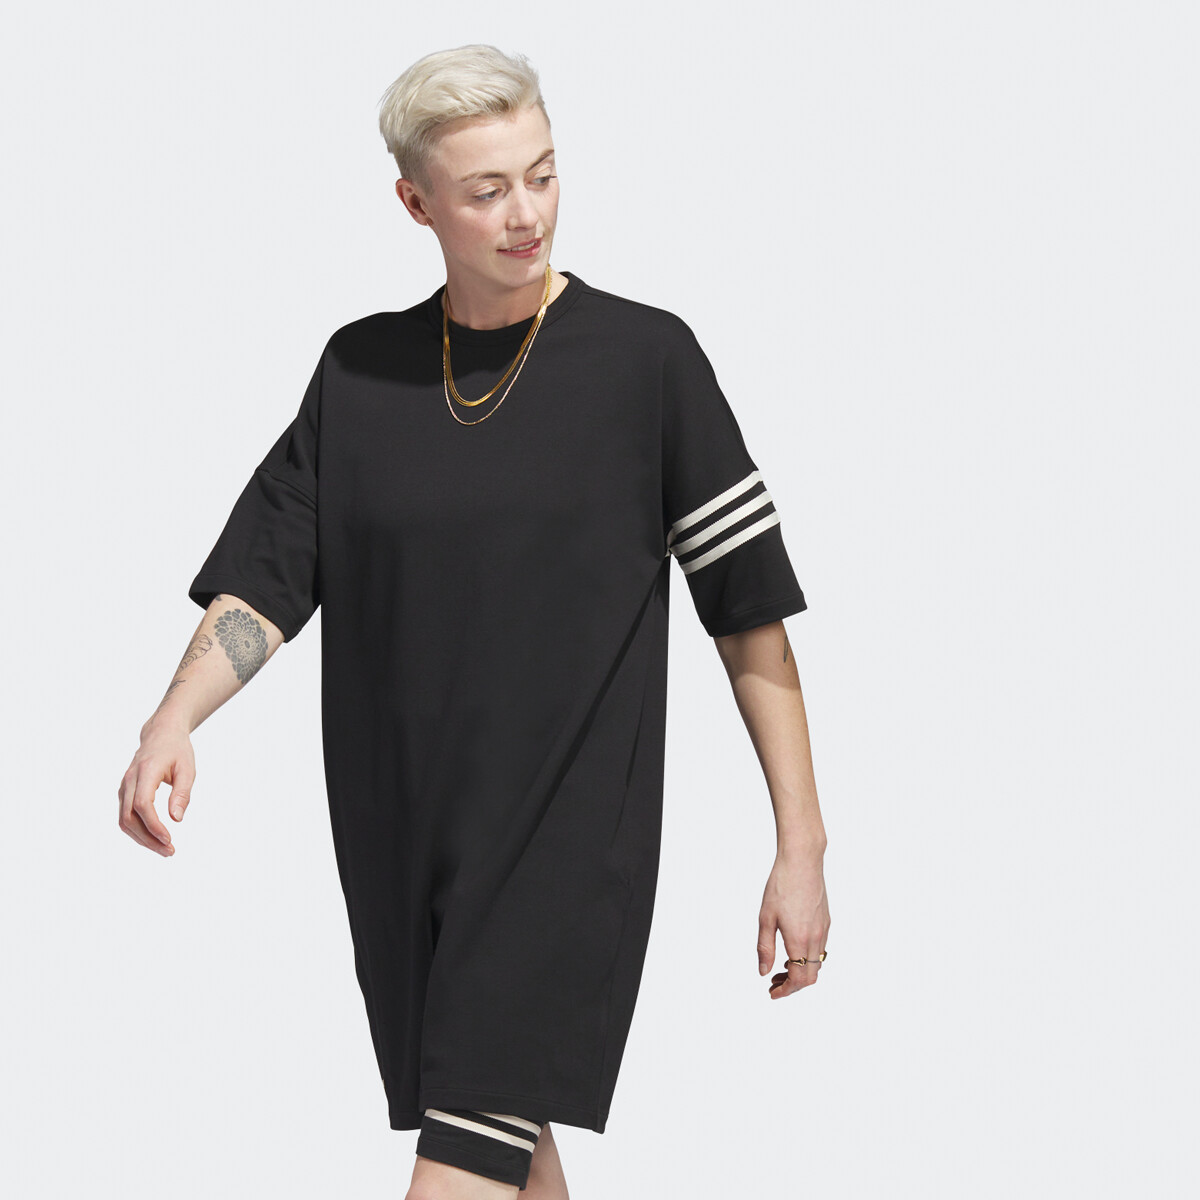 Adidas Originals Adicolor Summer Dress ab 25,00 € | Preisvergleich bei